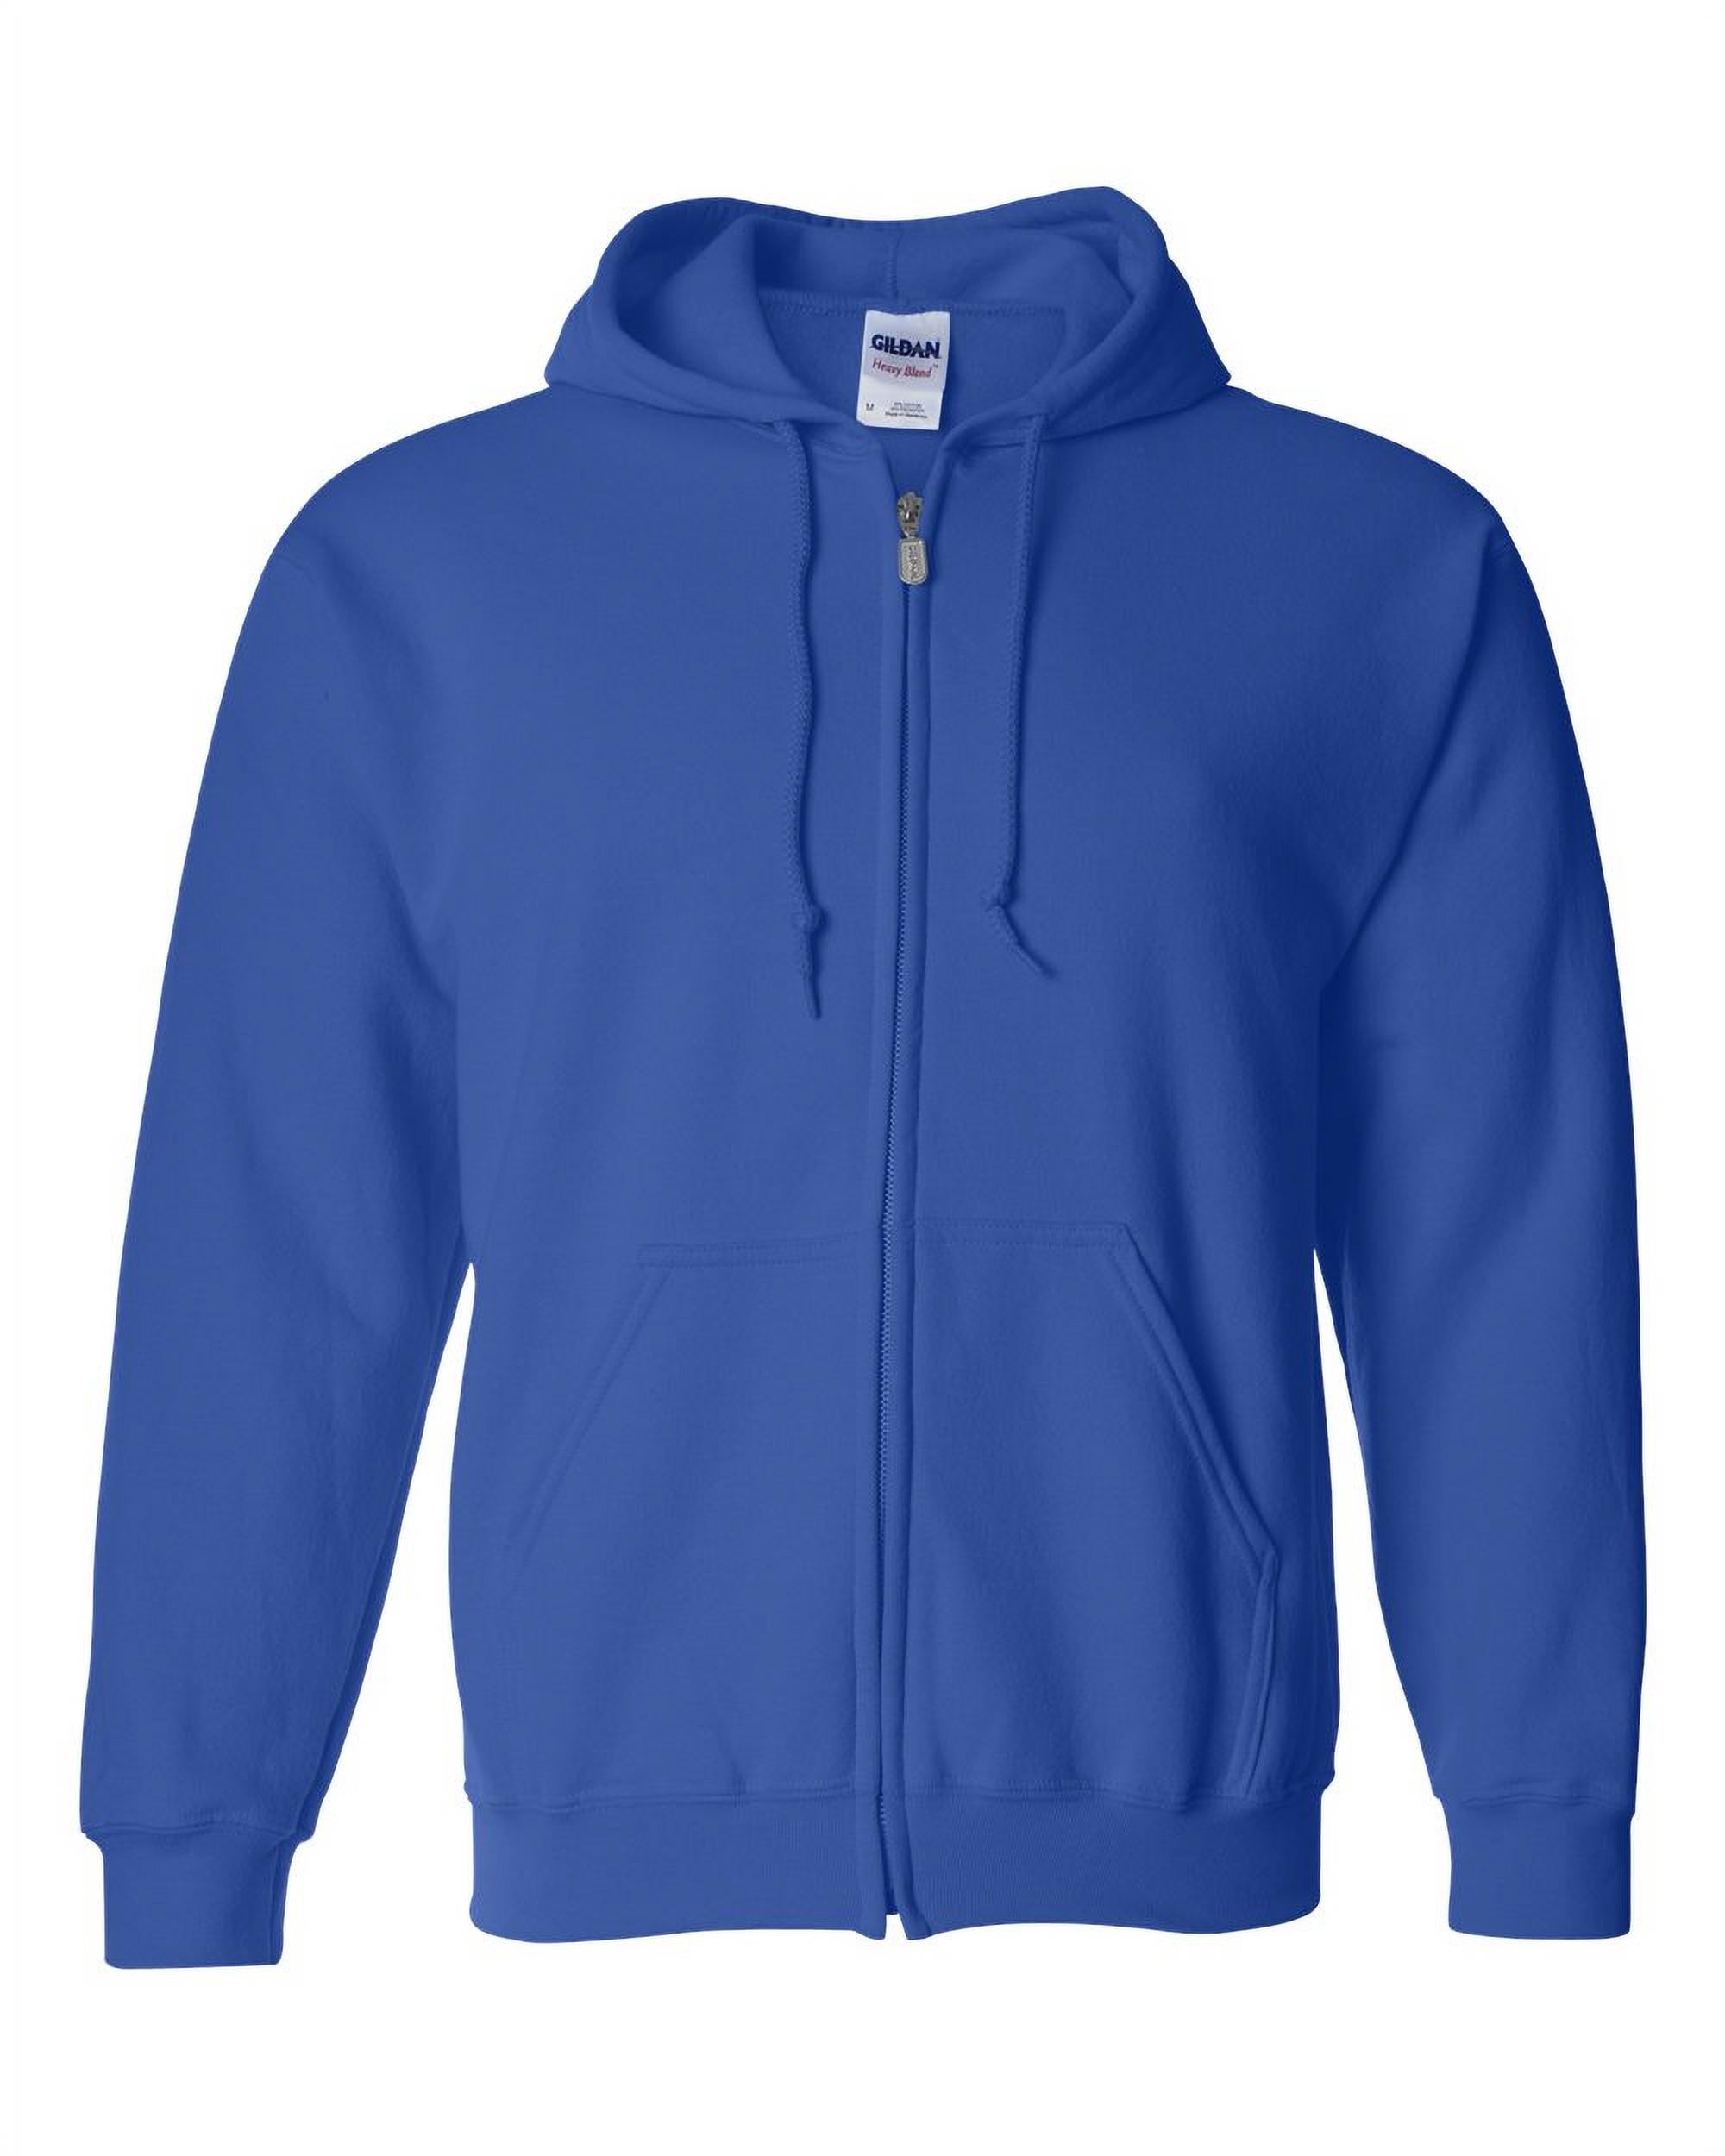 Artix - Men's Sweatshirt Full-Zip Pullover - St. Louis - image 2 of 5